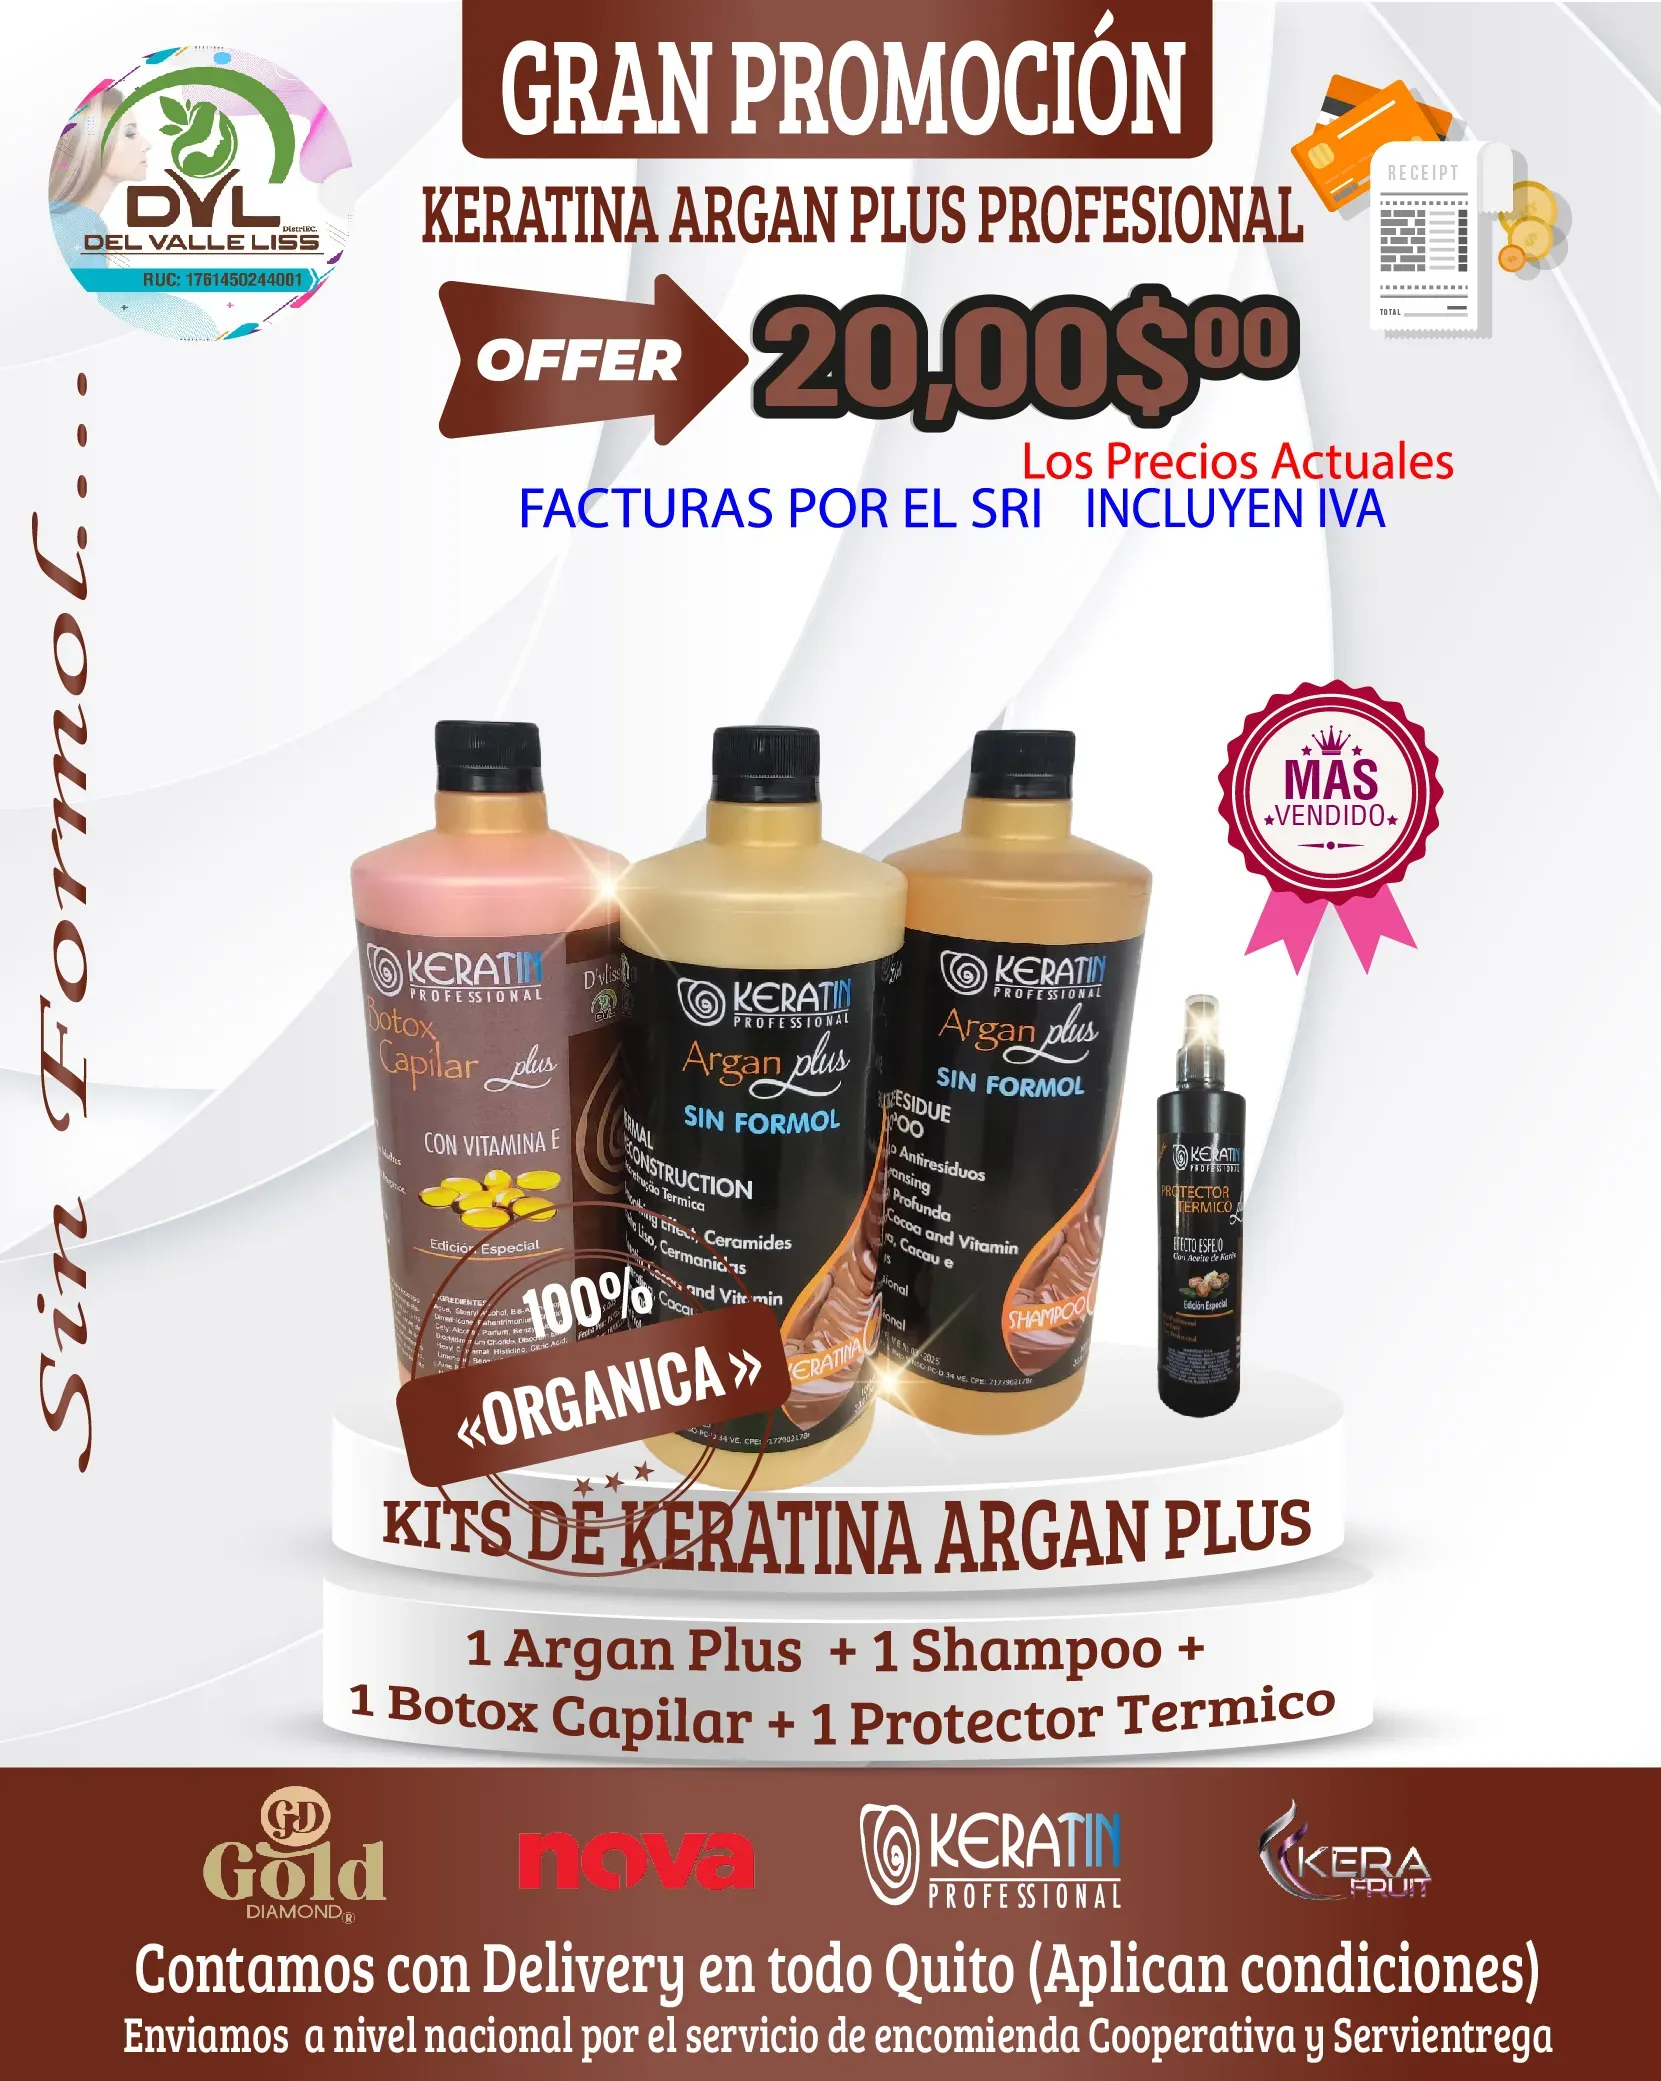 Kits Keratina Organica Argan Plus Keratin Profesional